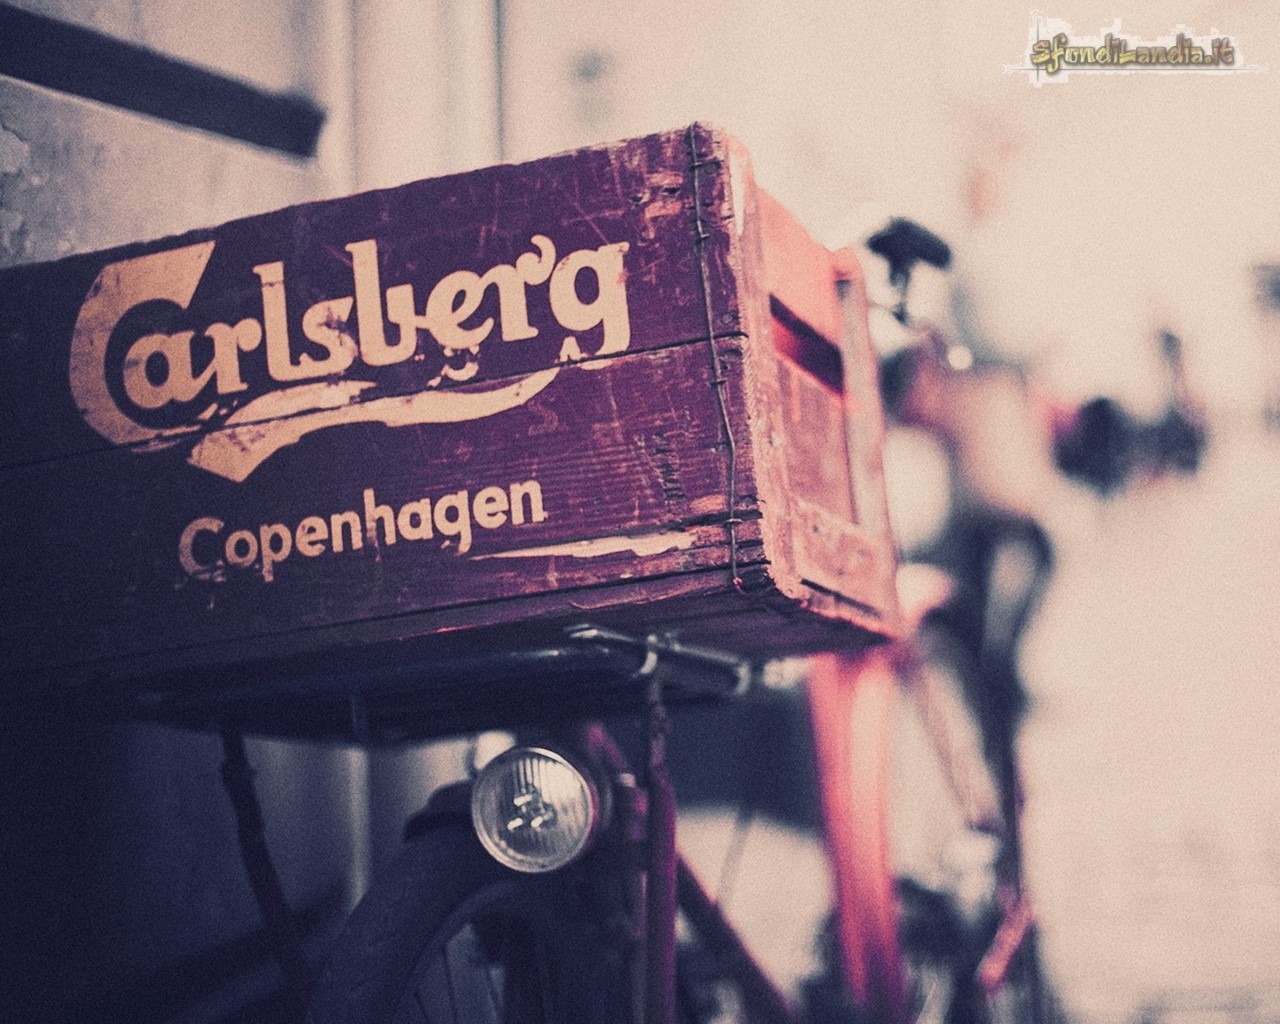 Carlsberg Vintage